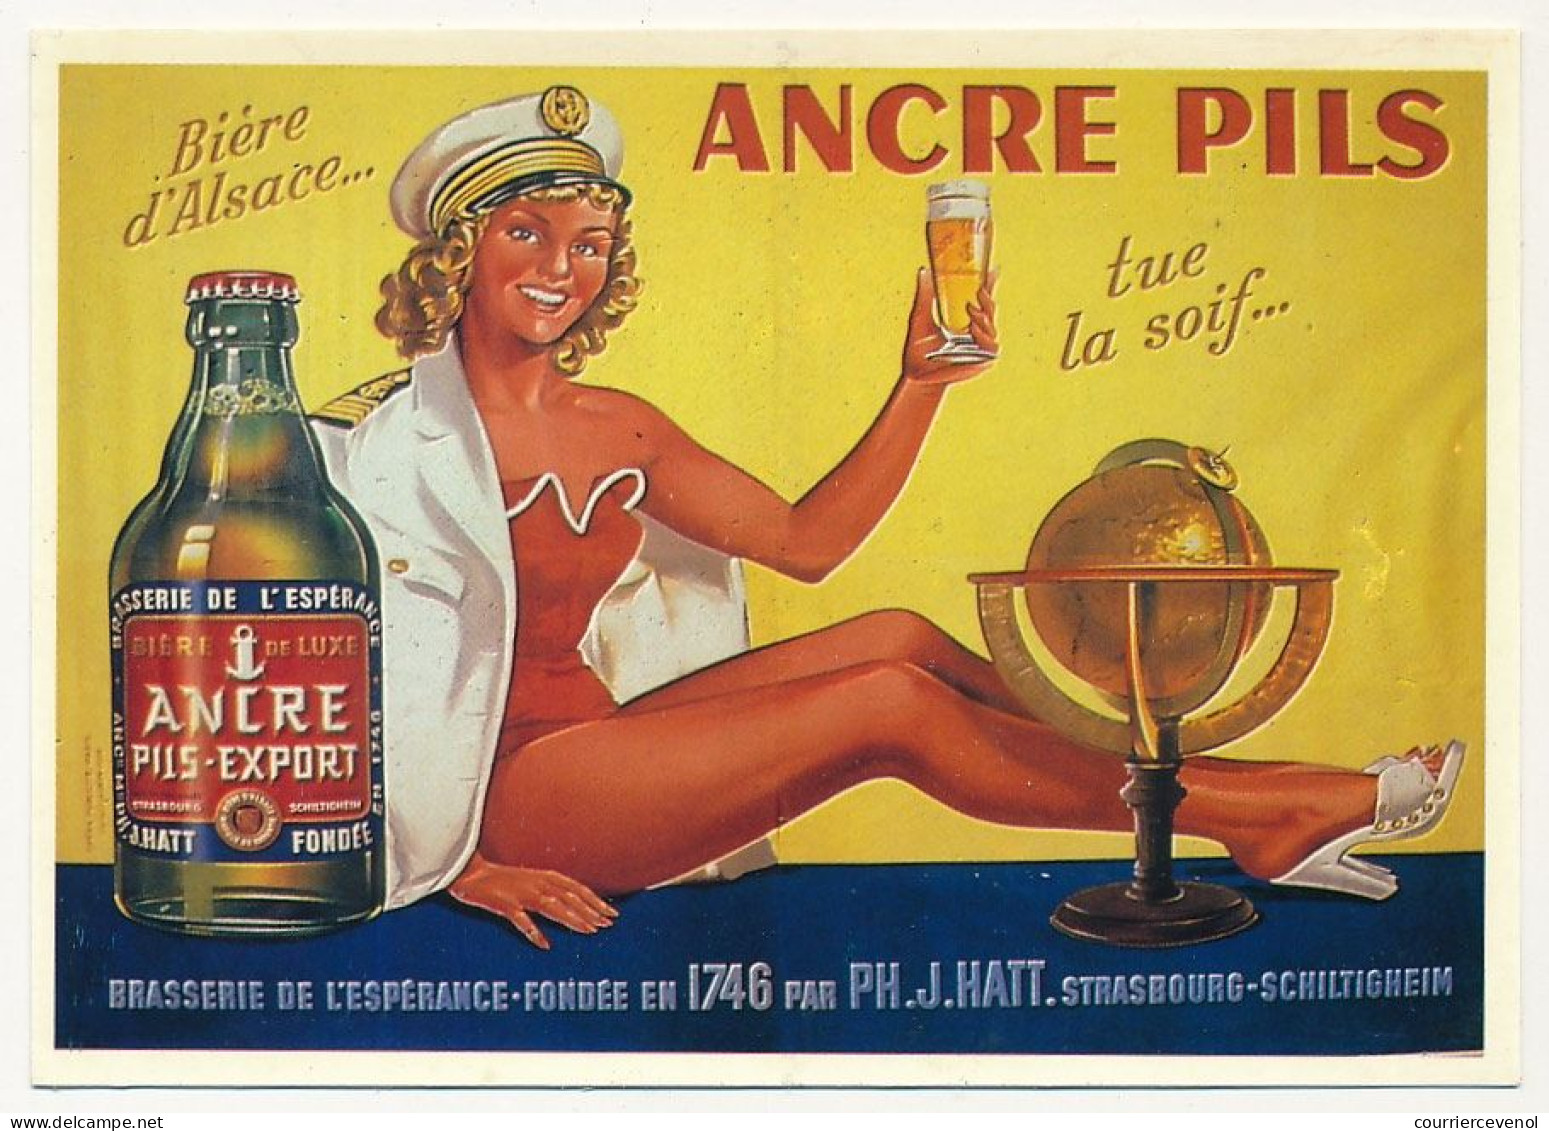 CPM - Bière D'Alsace ANCRE PILS Tue La Soif - Strasbourg Schiltigheim -Reproduction D'Affiche 1955 - Editions F. Nugeron - Strasbourg